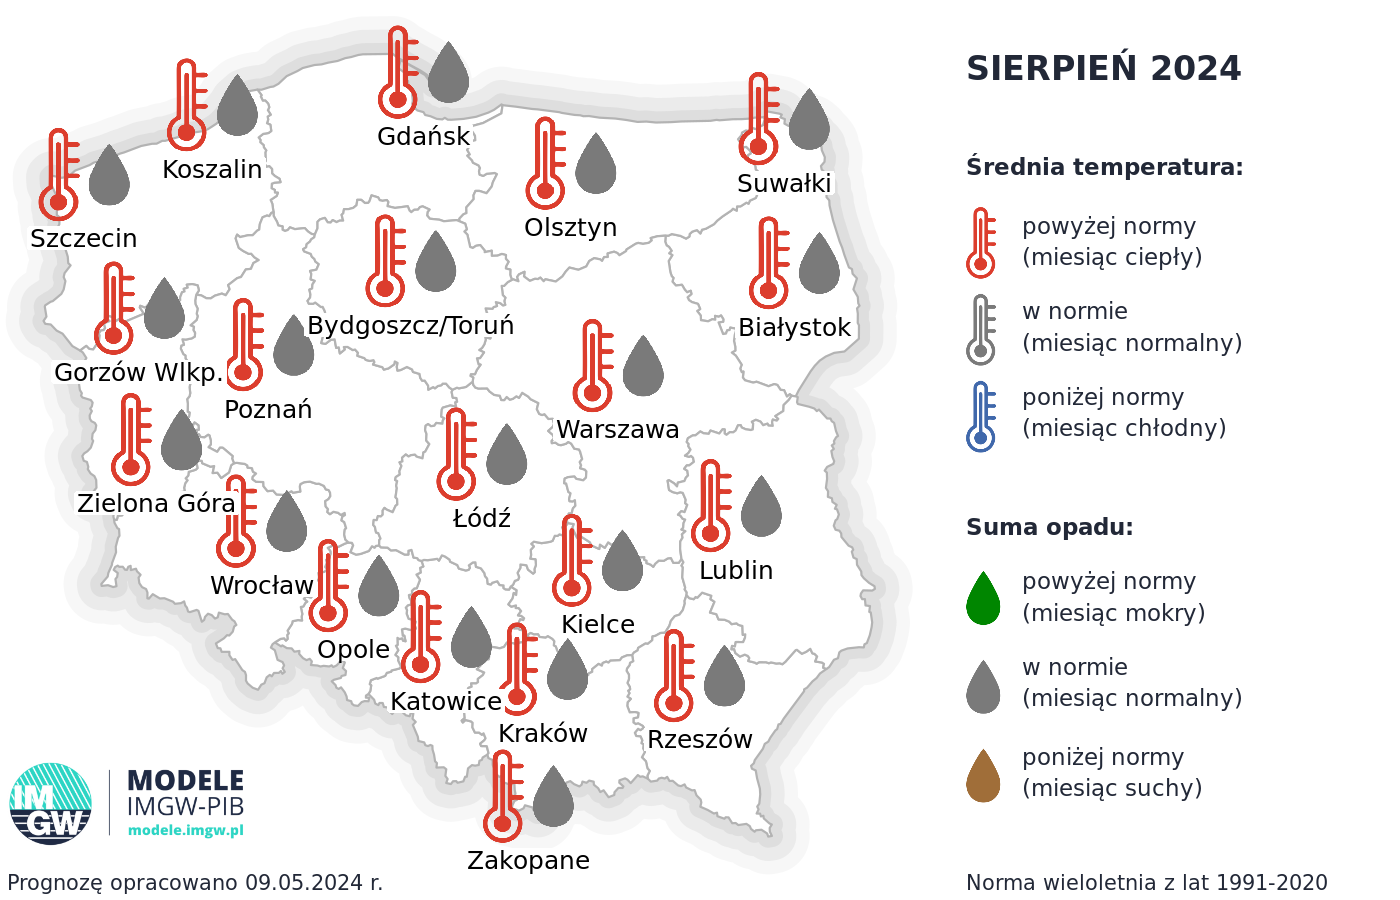 Rys. 3. Prognoza średniej miesięcznej temperatury powietrza i miesięcznej sumy opadów atmosferycznych na sierpień 2024 r. dla wybranych miast w Polsce